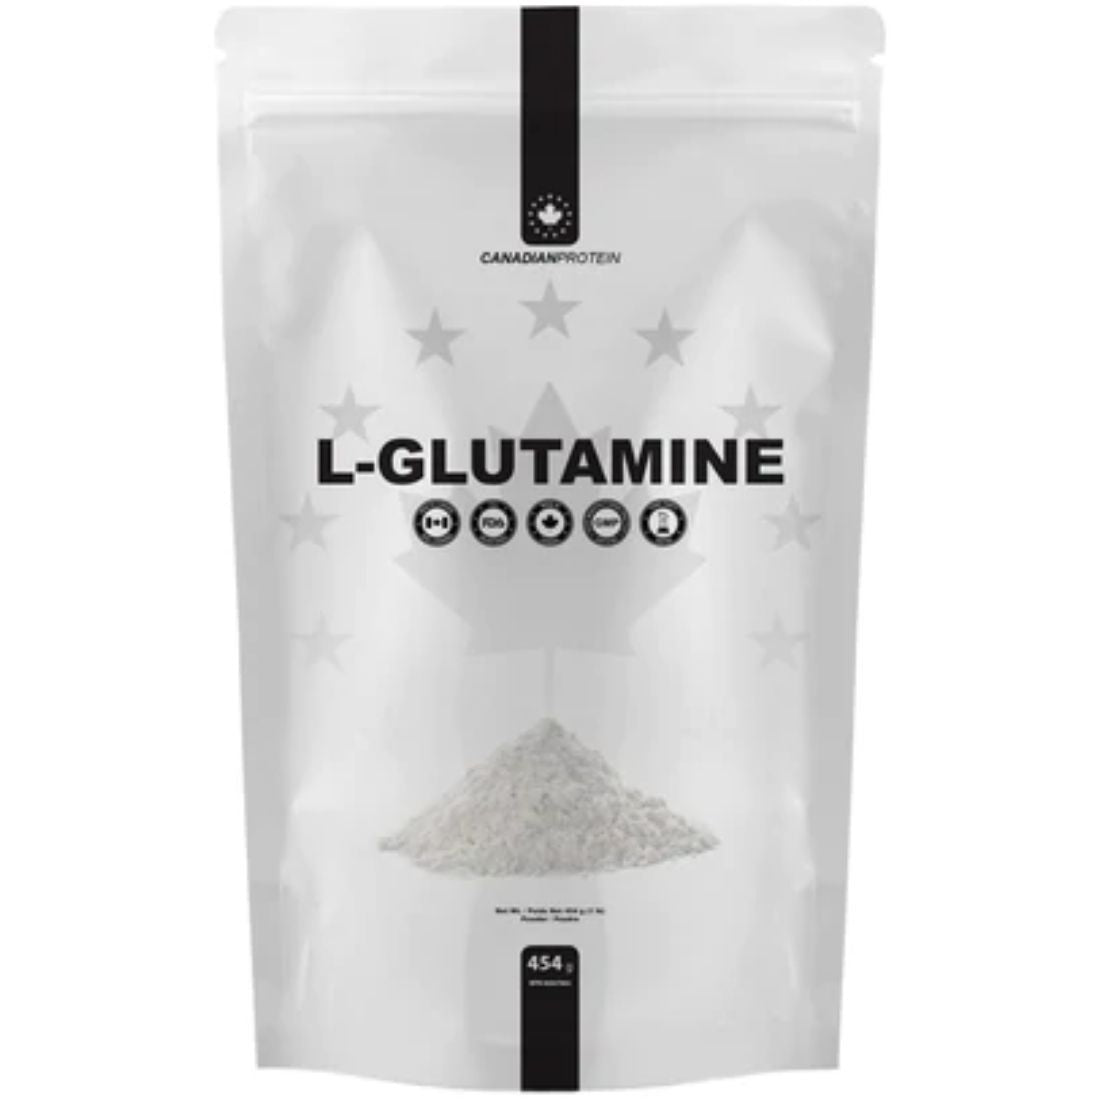 Canadian Protein L-Glutamine Powder